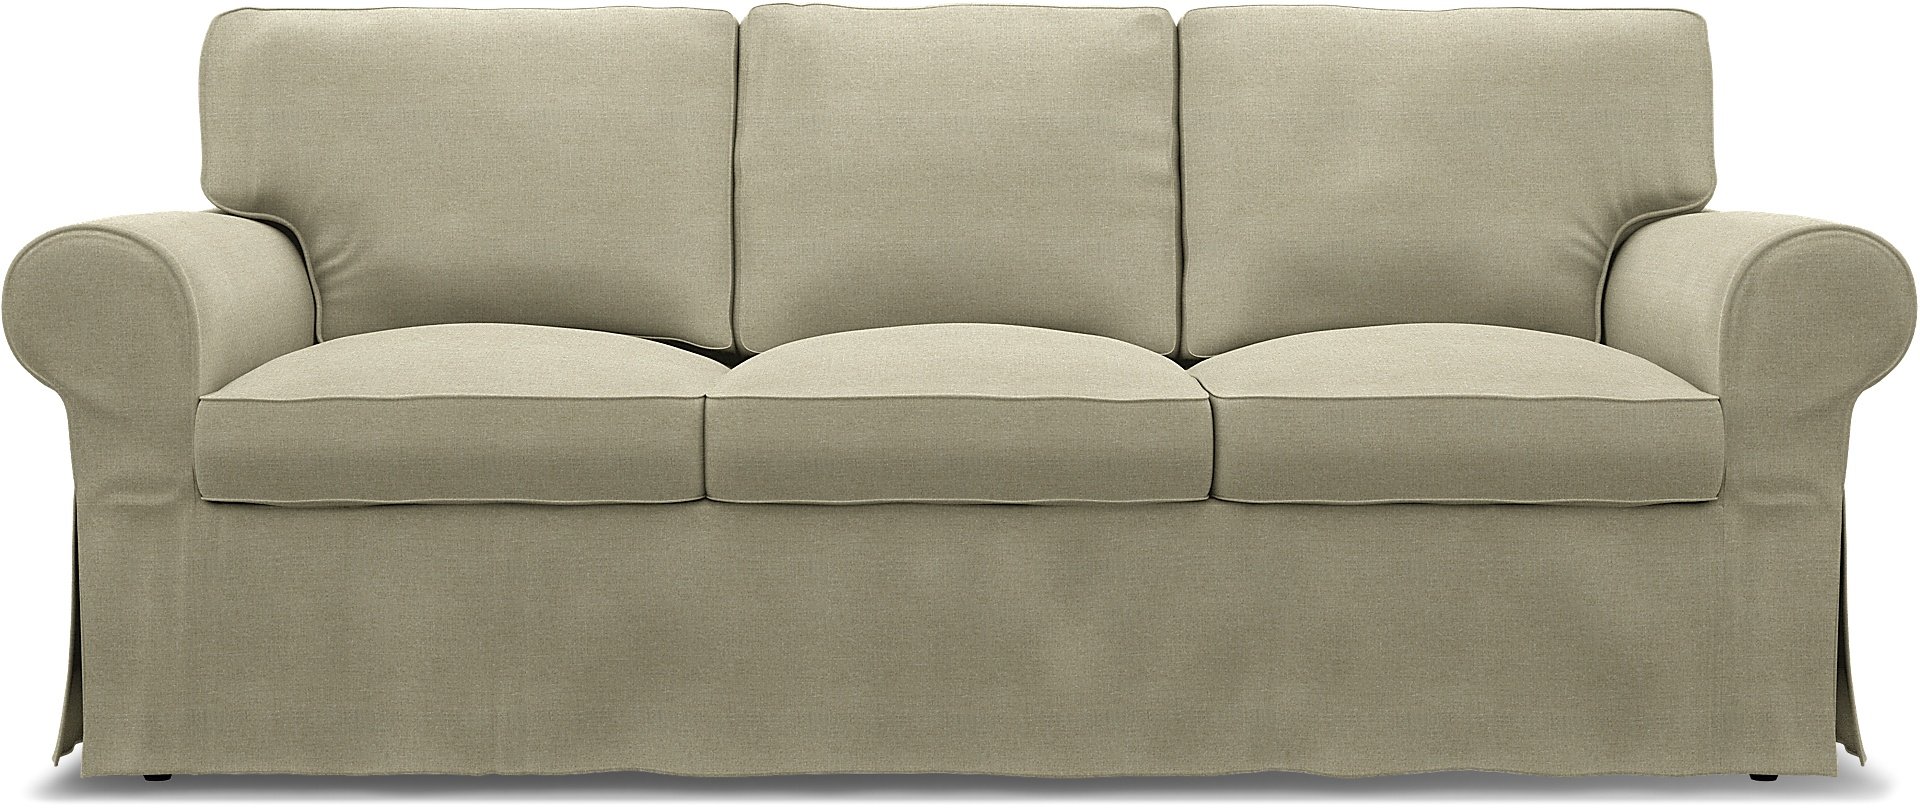 IKEA - Ektorp 3 Seater Sofa Bed Cover, Pebble, Linen - Bemz